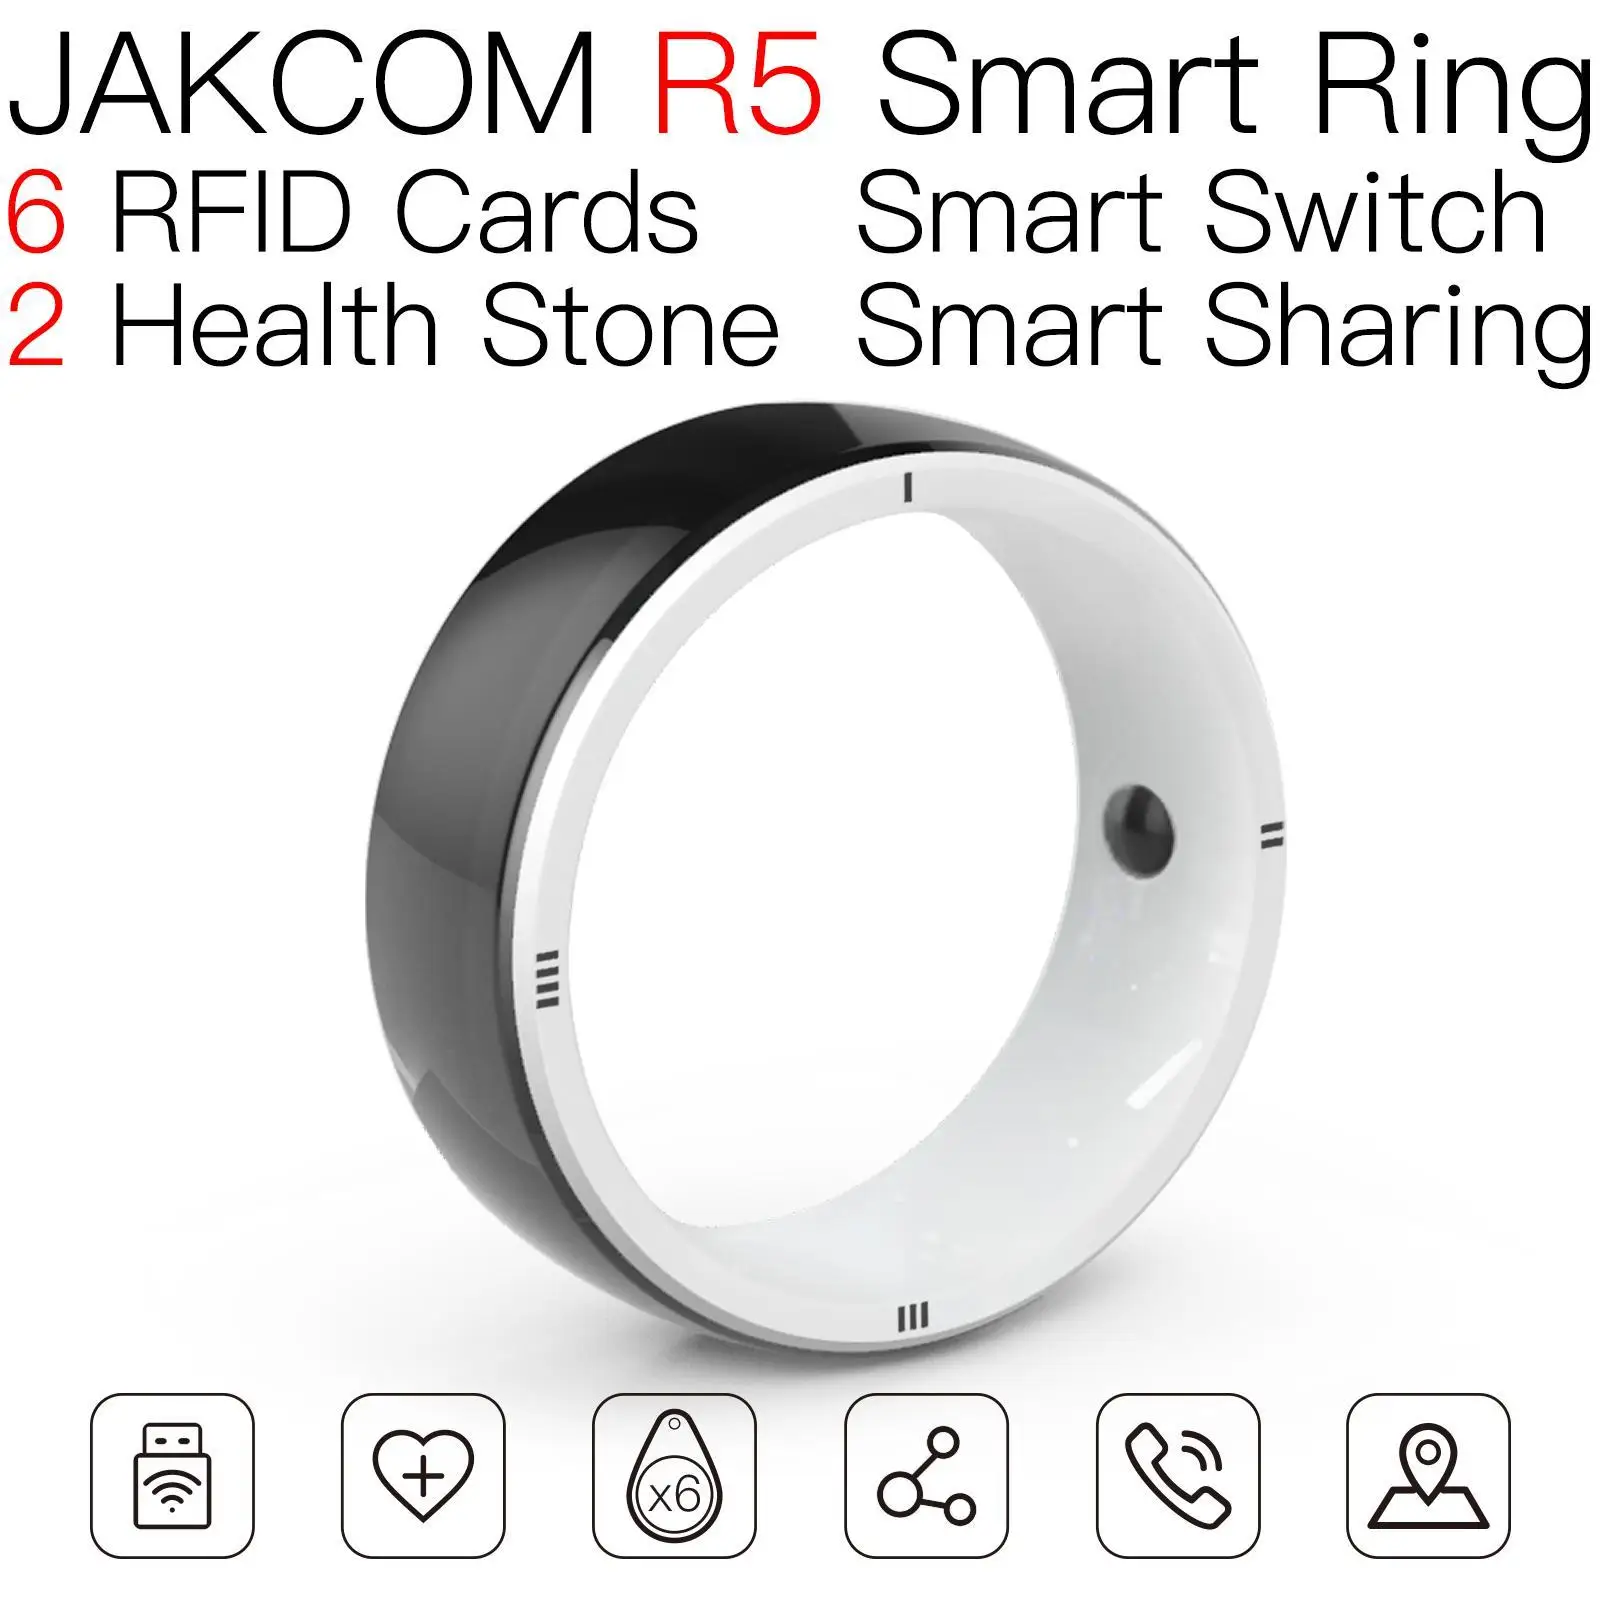 

JAKCOM R5 Smart Ring New arrival as unionpay card rfid with hole mini nfc tag jordan 5 acnh cards microchip 1k s50 carte animal